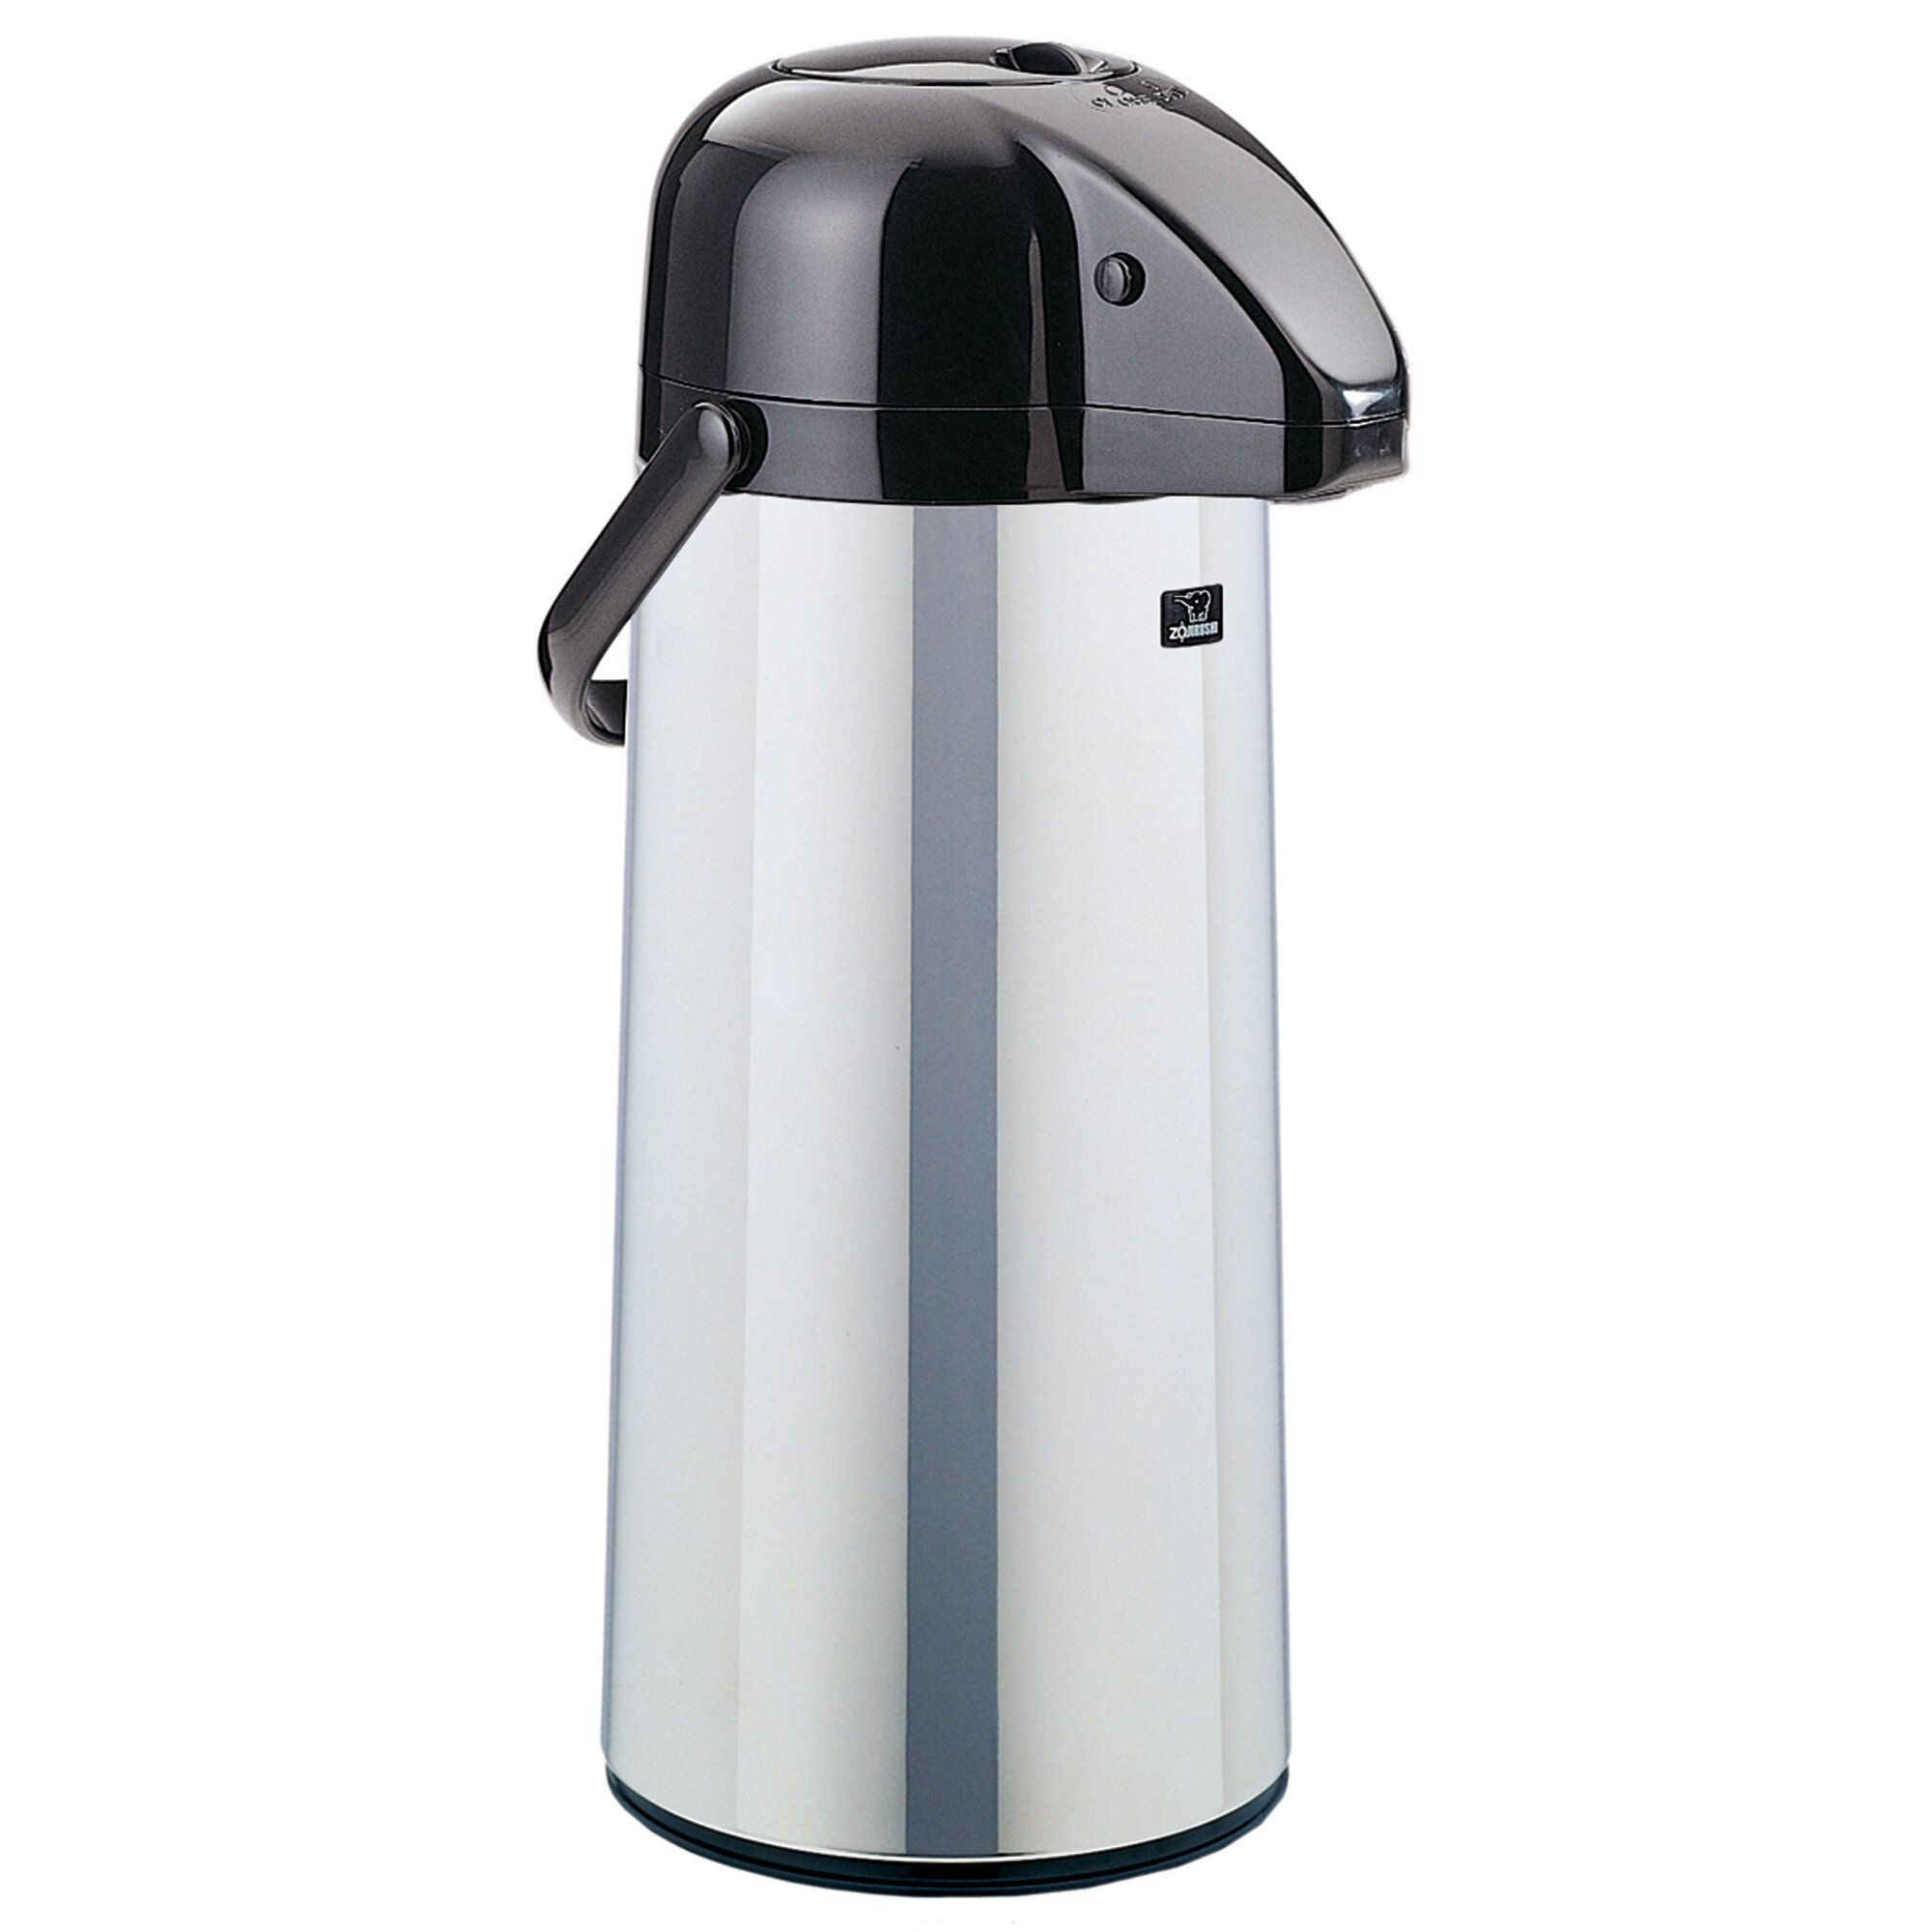 https://assets.wfcdn.com/im/10810715/compr-r85/8265/82656493/beverage-dispenser-11-cup-airpot.jpg